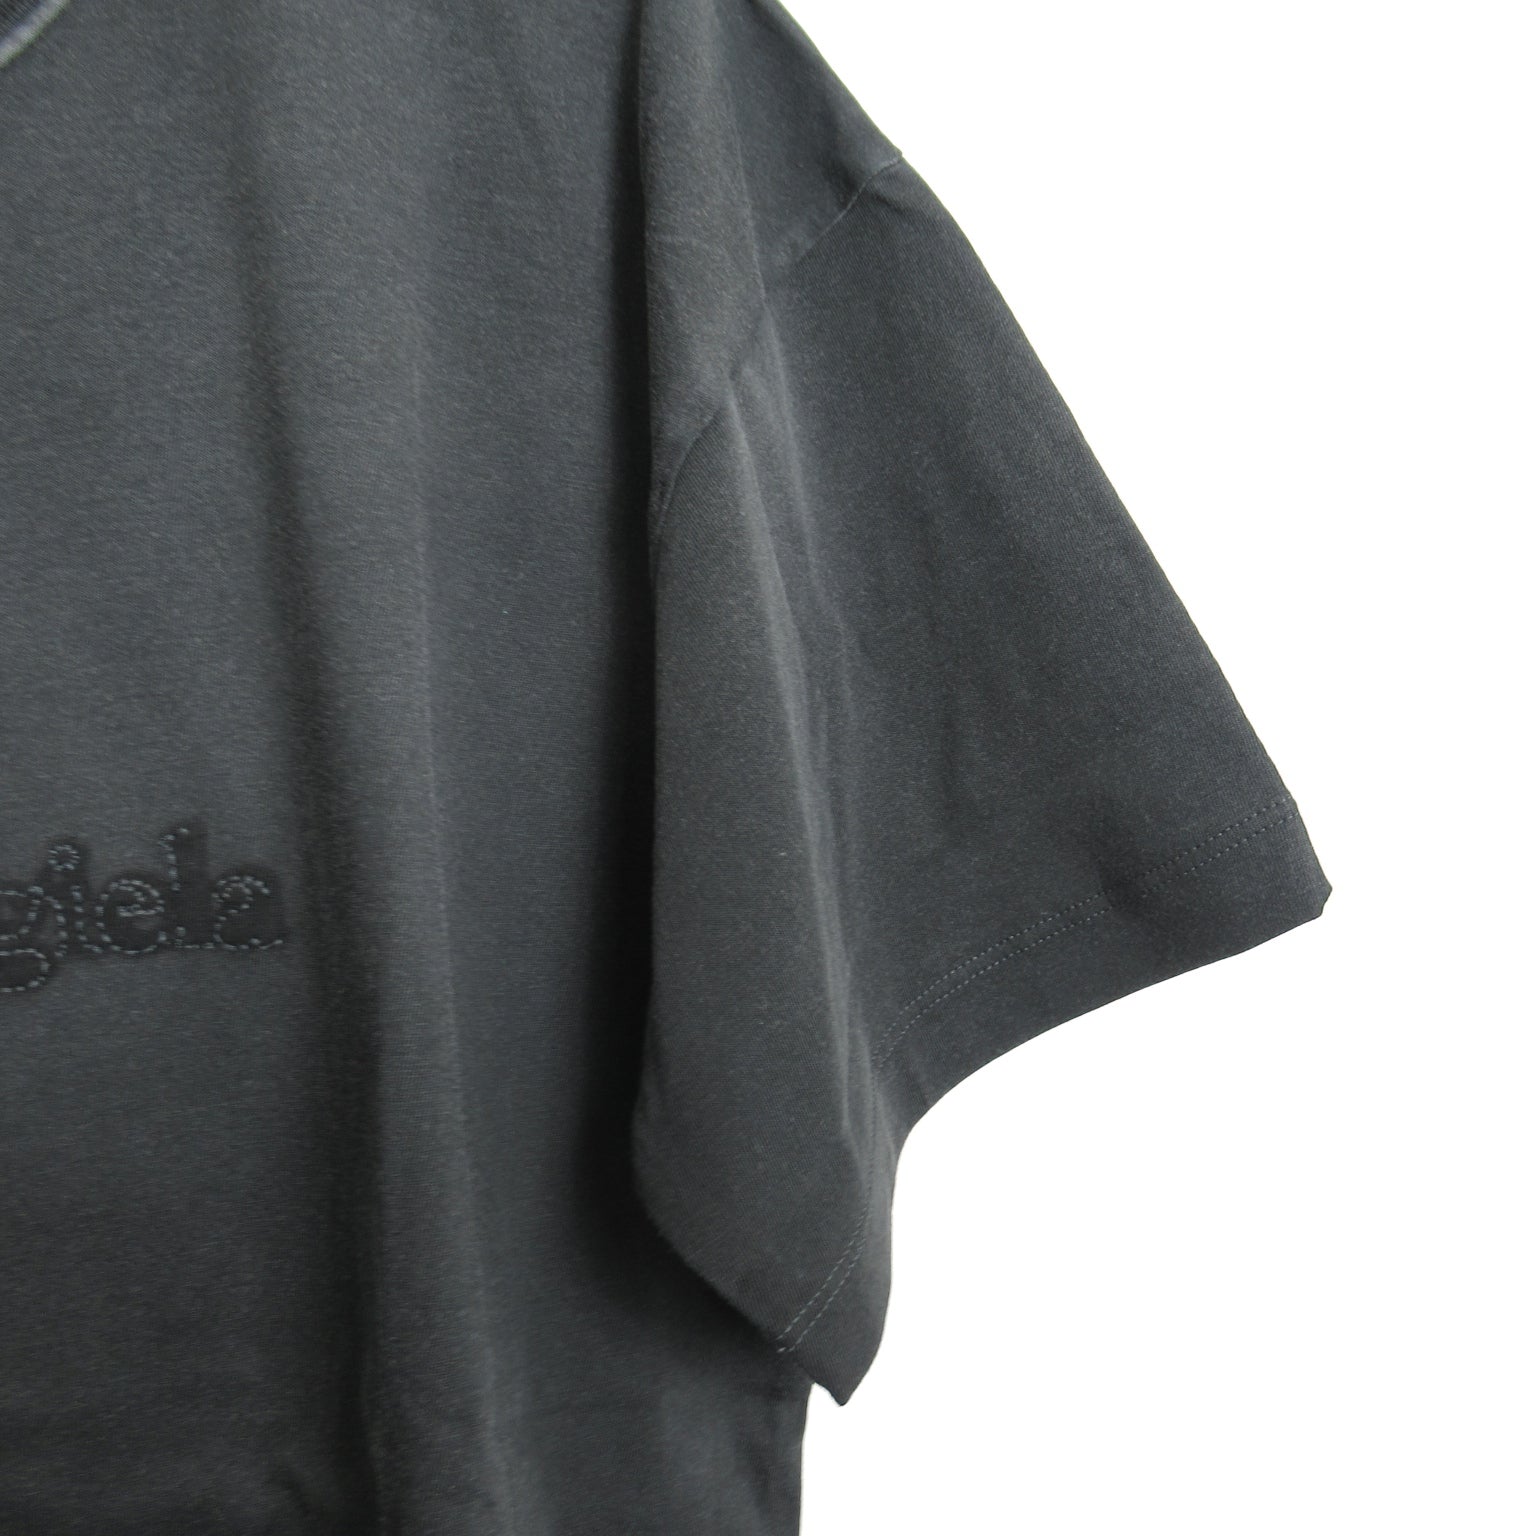 Maison Margiela T shirt Cotton Black S51GC0526S20079970L